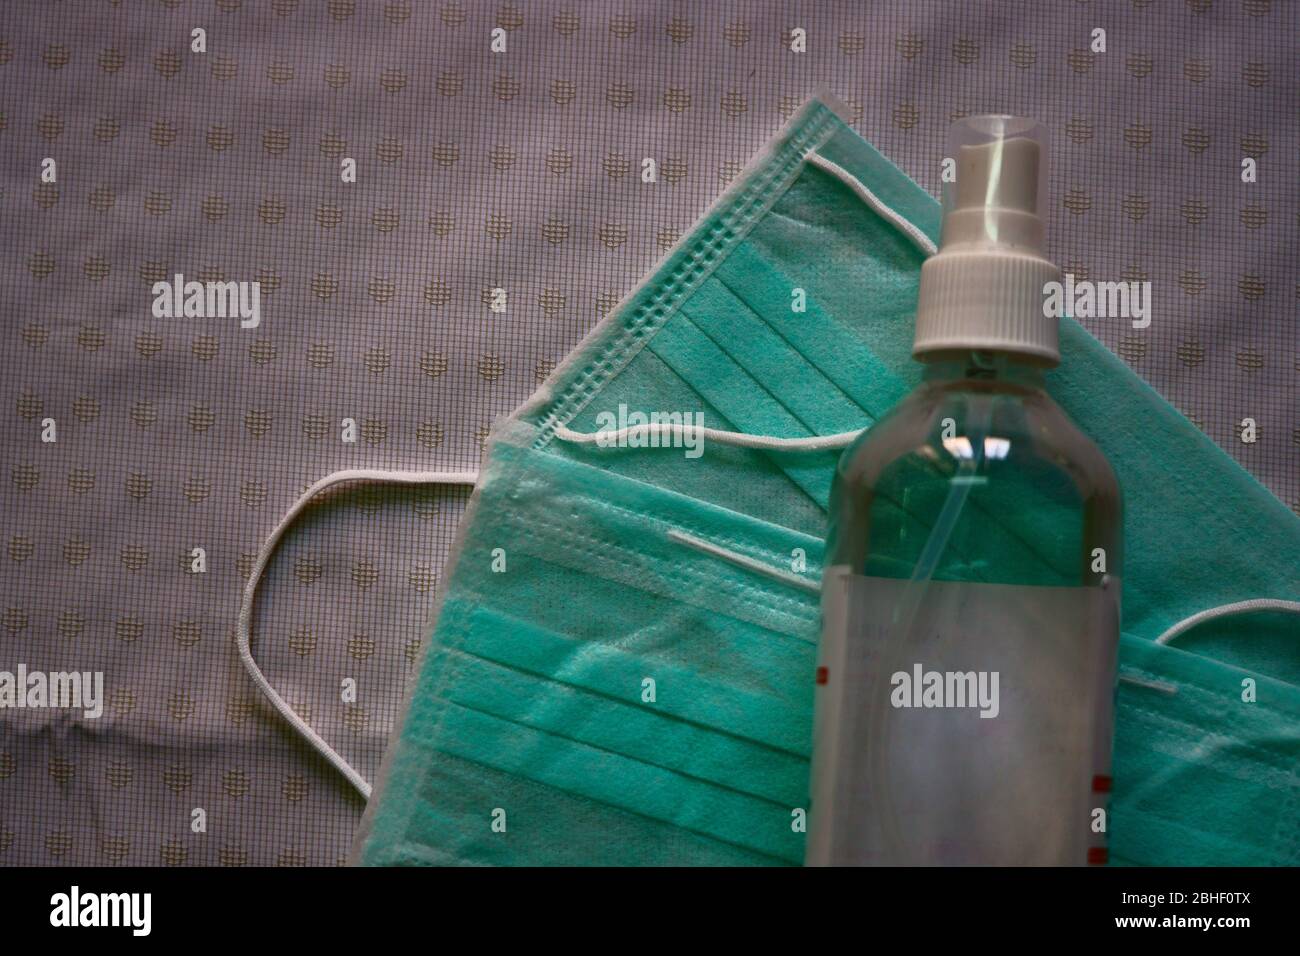 Immagine di maschere e igienizzatore in un flacone trasparente Foto Stock